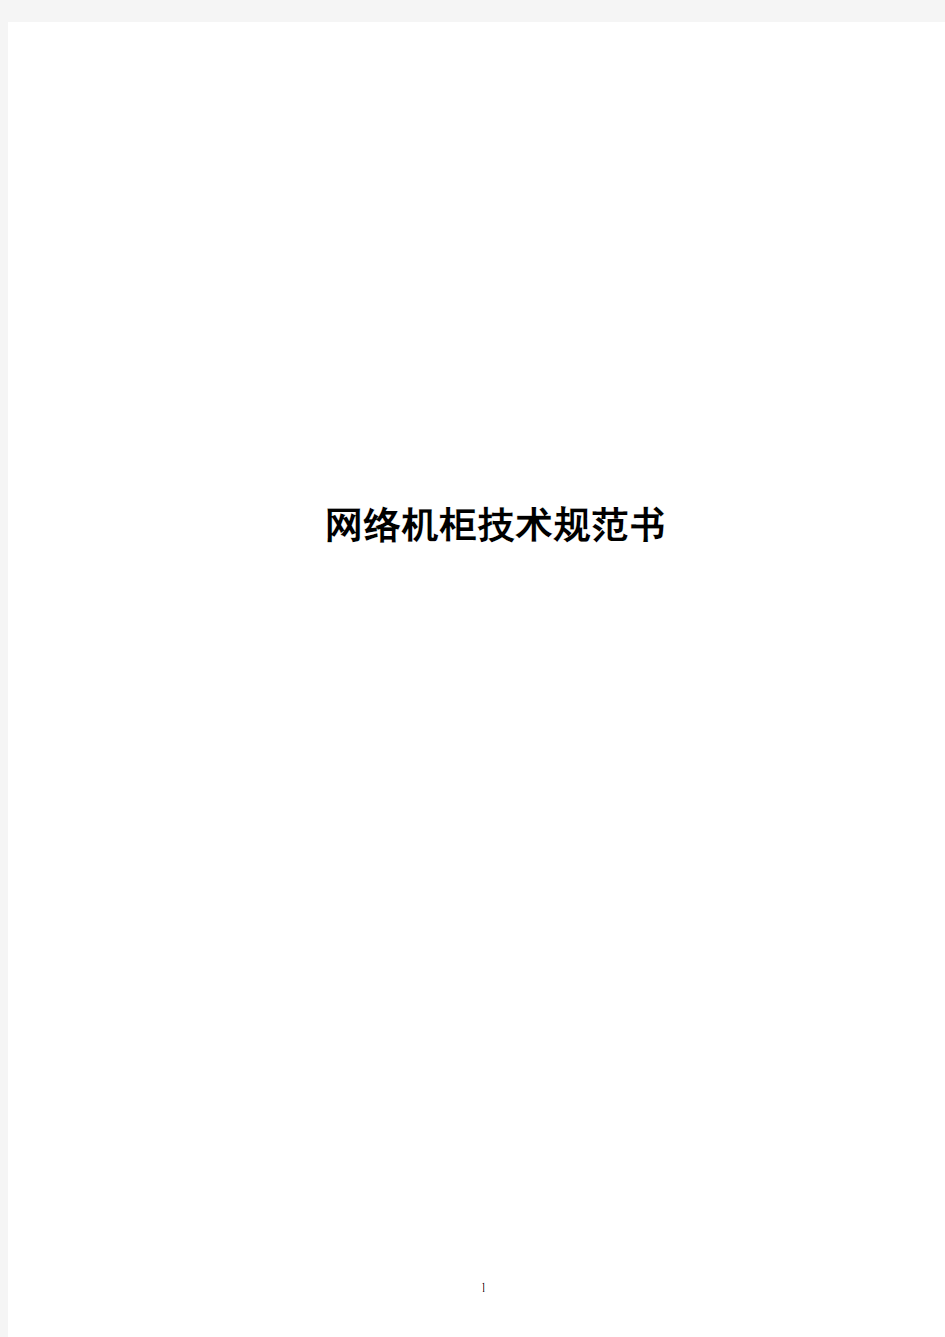 中国电信2010年网络机柜技术规范书